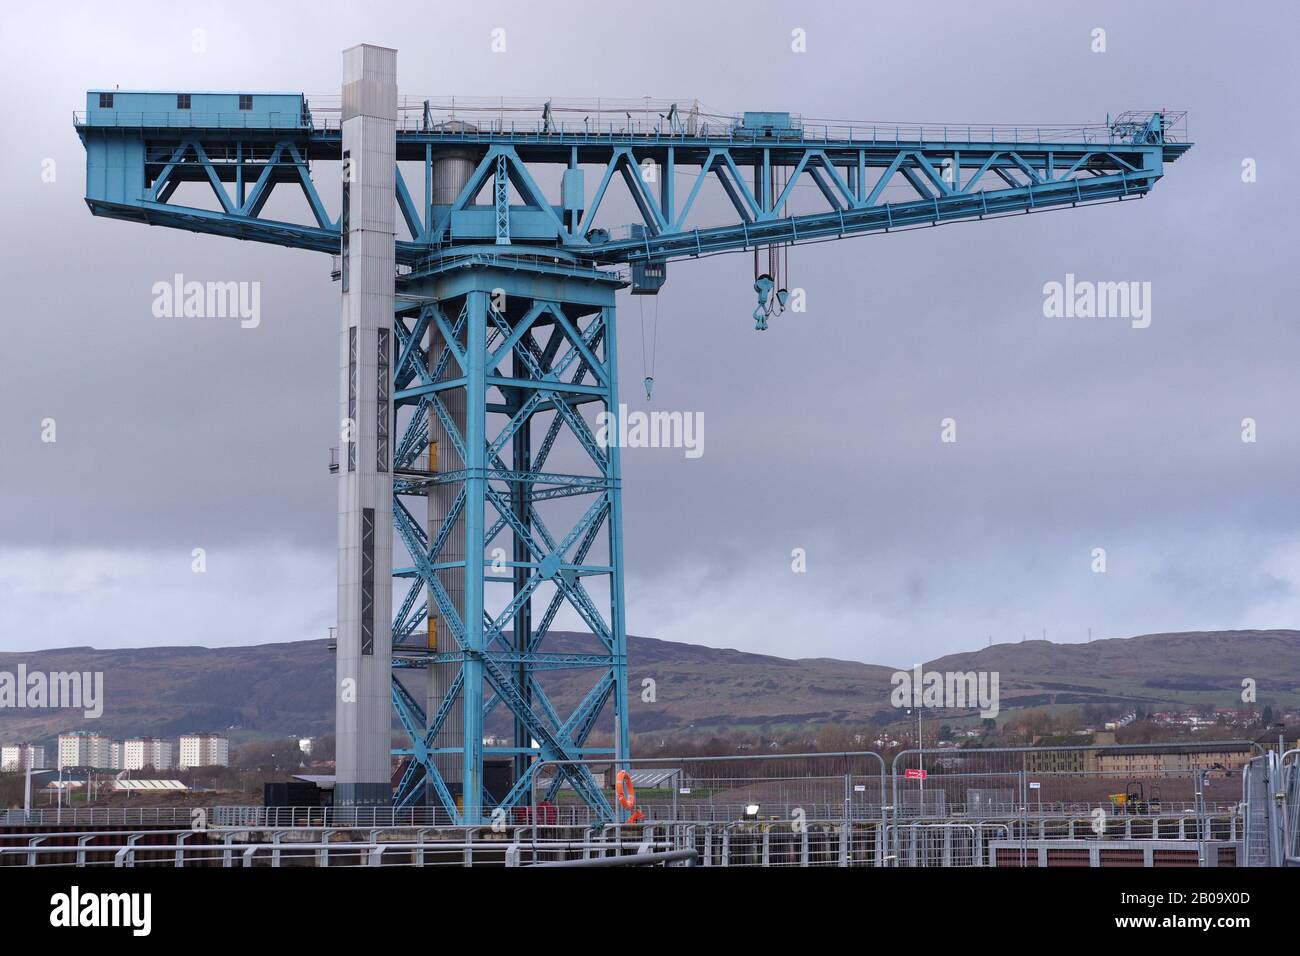 Titan Crane at the Clydeside, Clydebank. Stock Photo